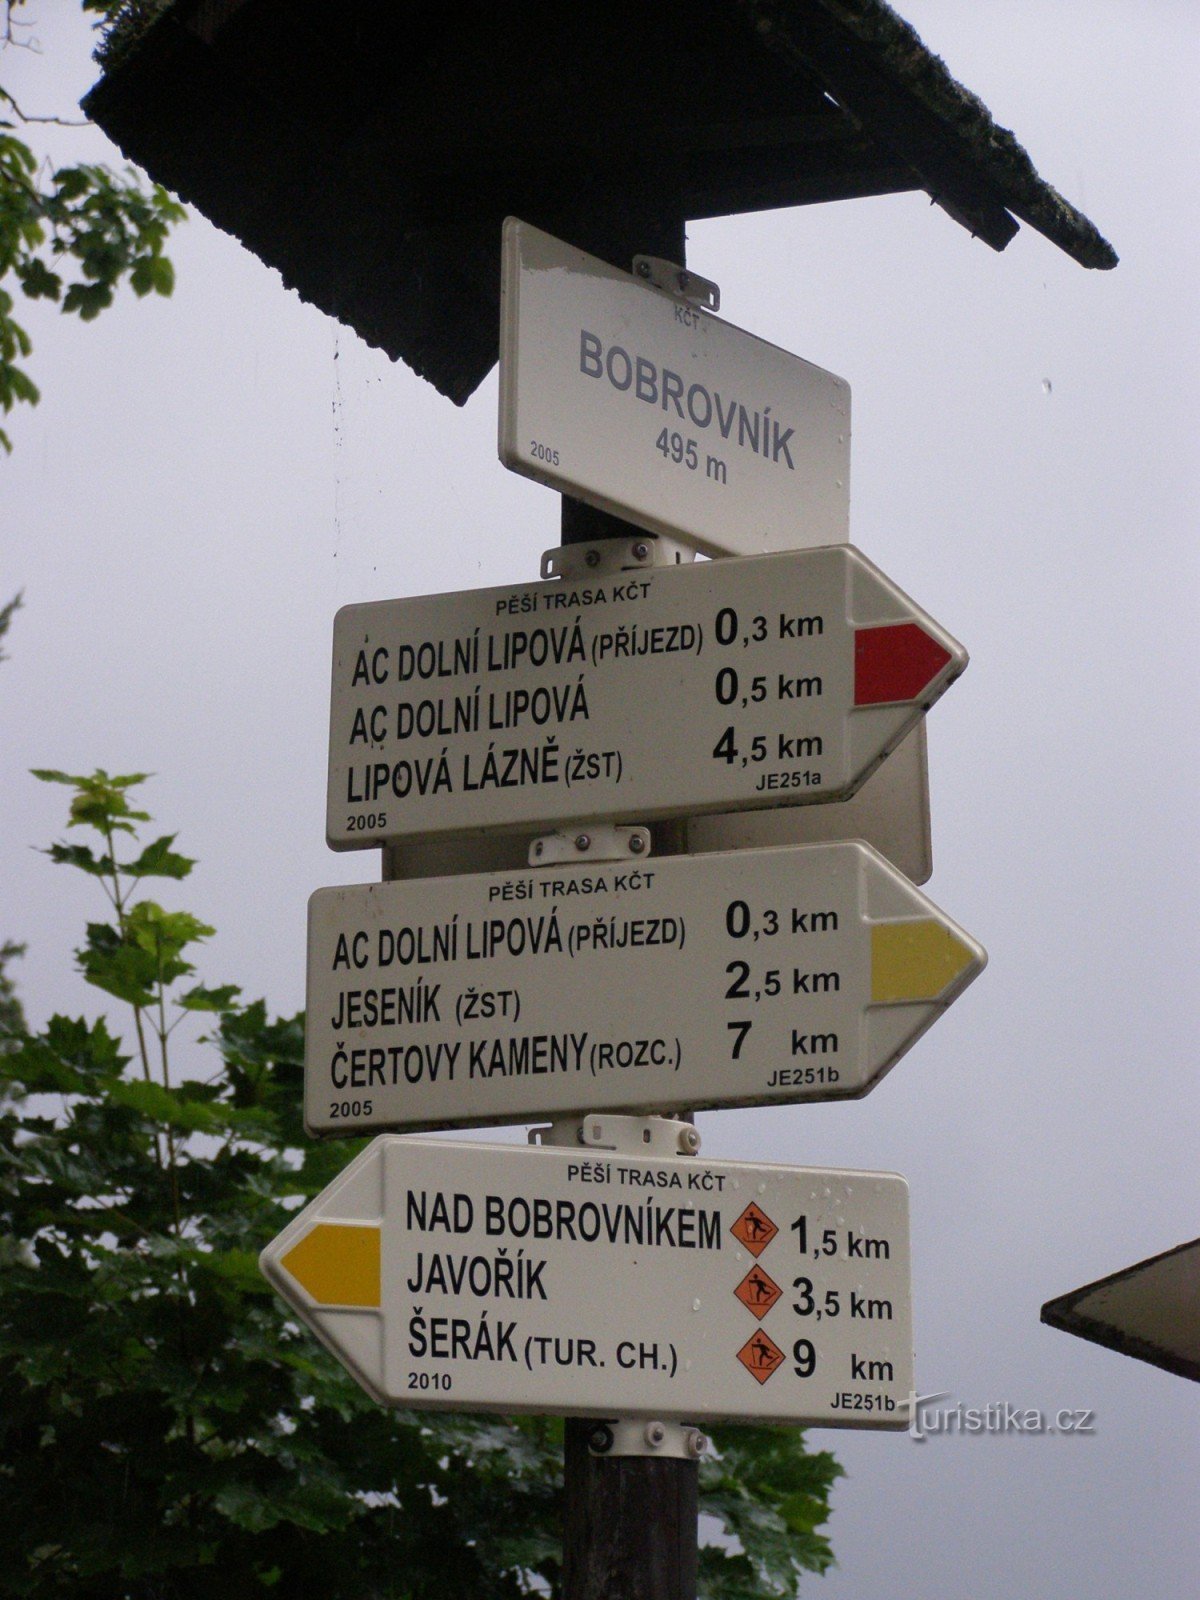 encrucijada turística - Bobrovník